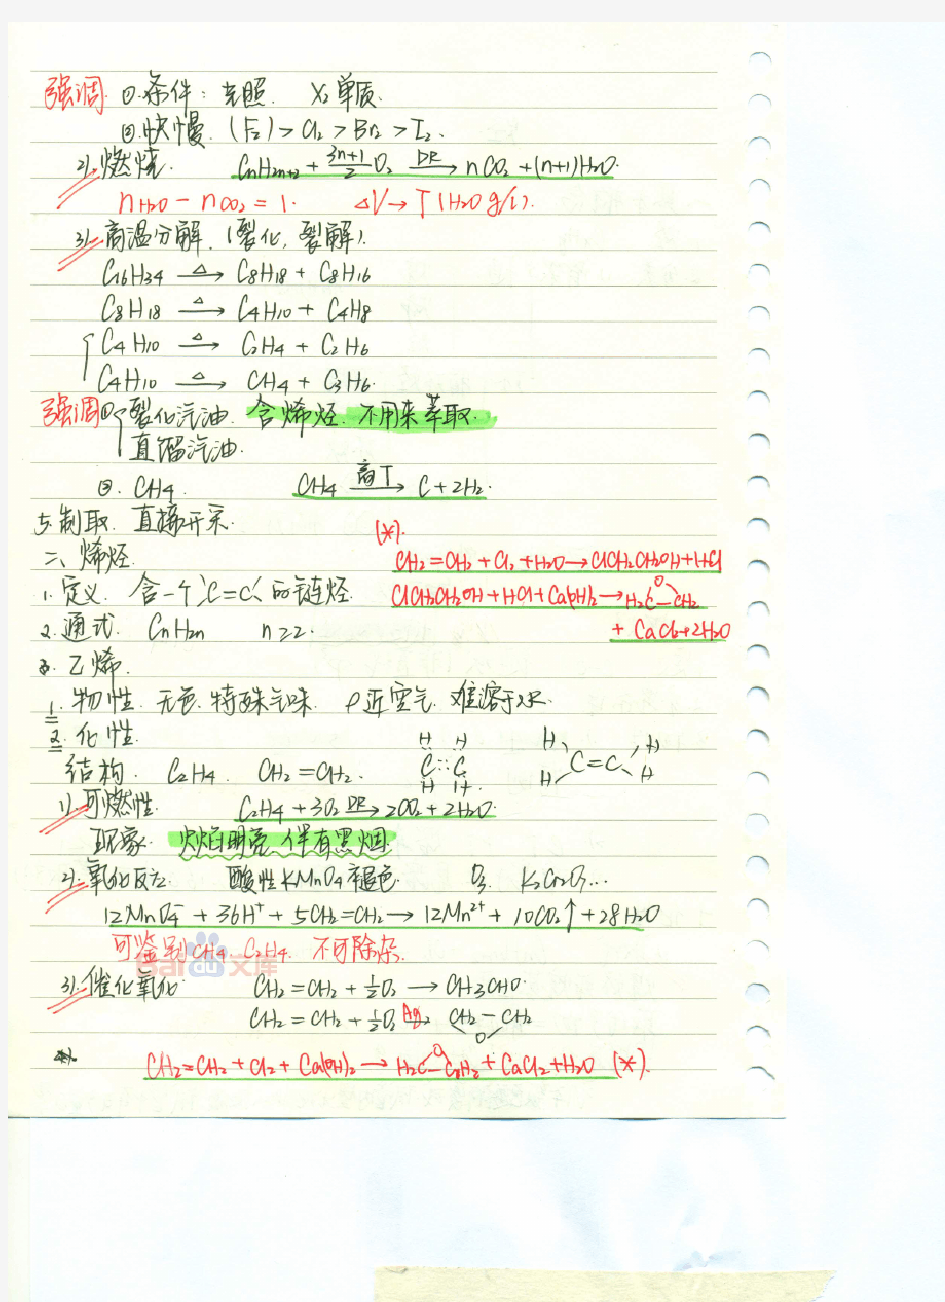 东北师大附中理科学霸高中化学笔记04_2014高考状元笔记